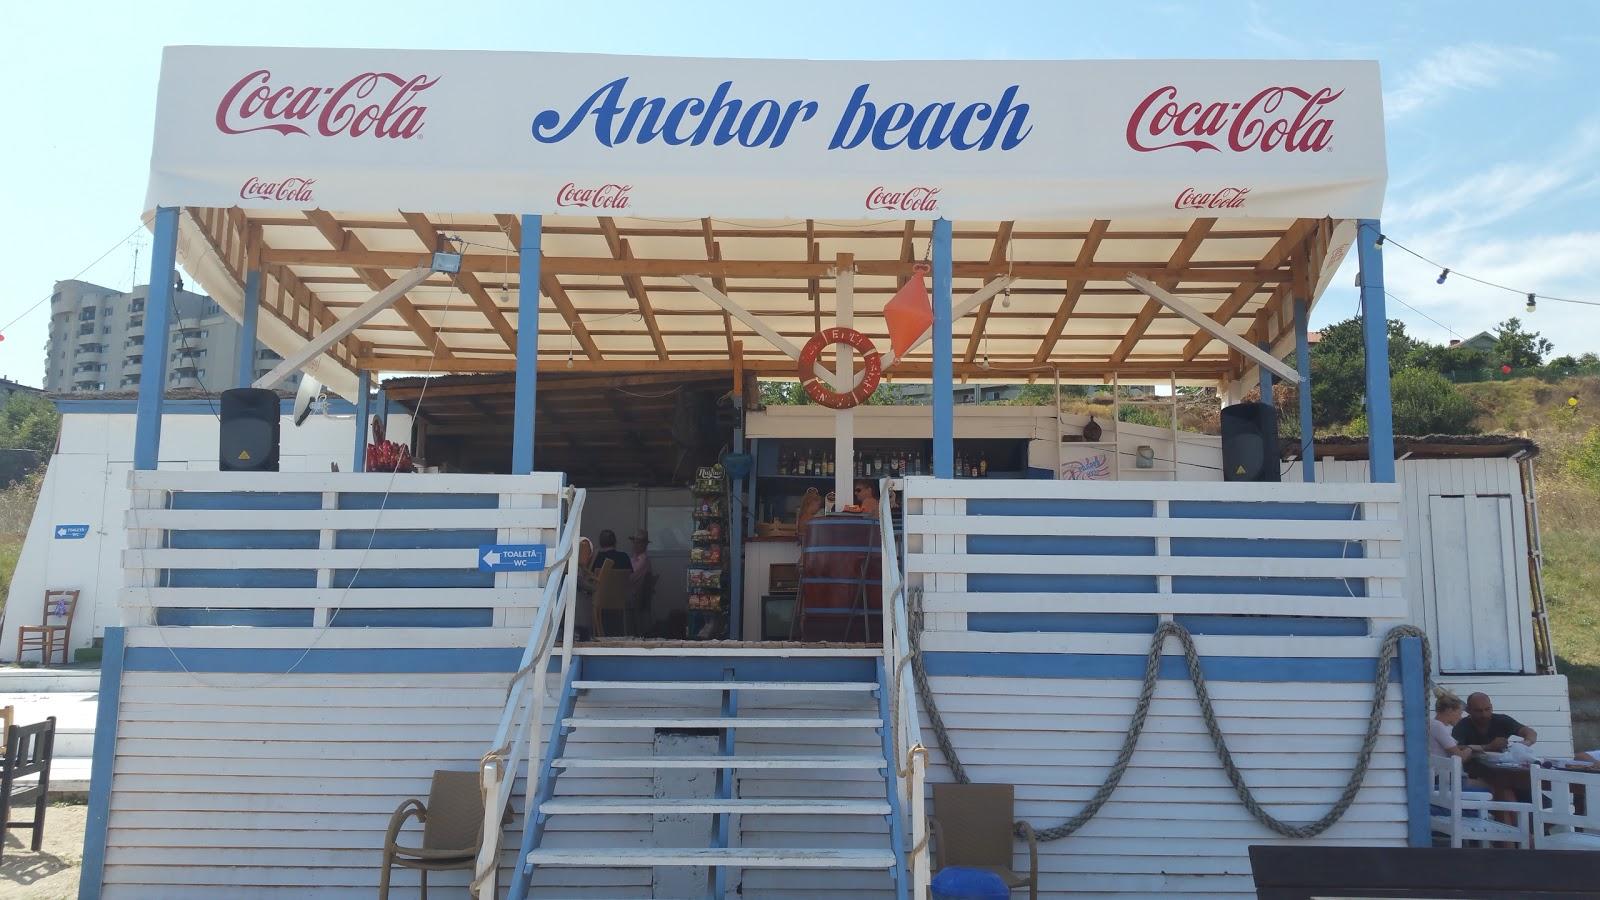 Sandee - Anchor Beach